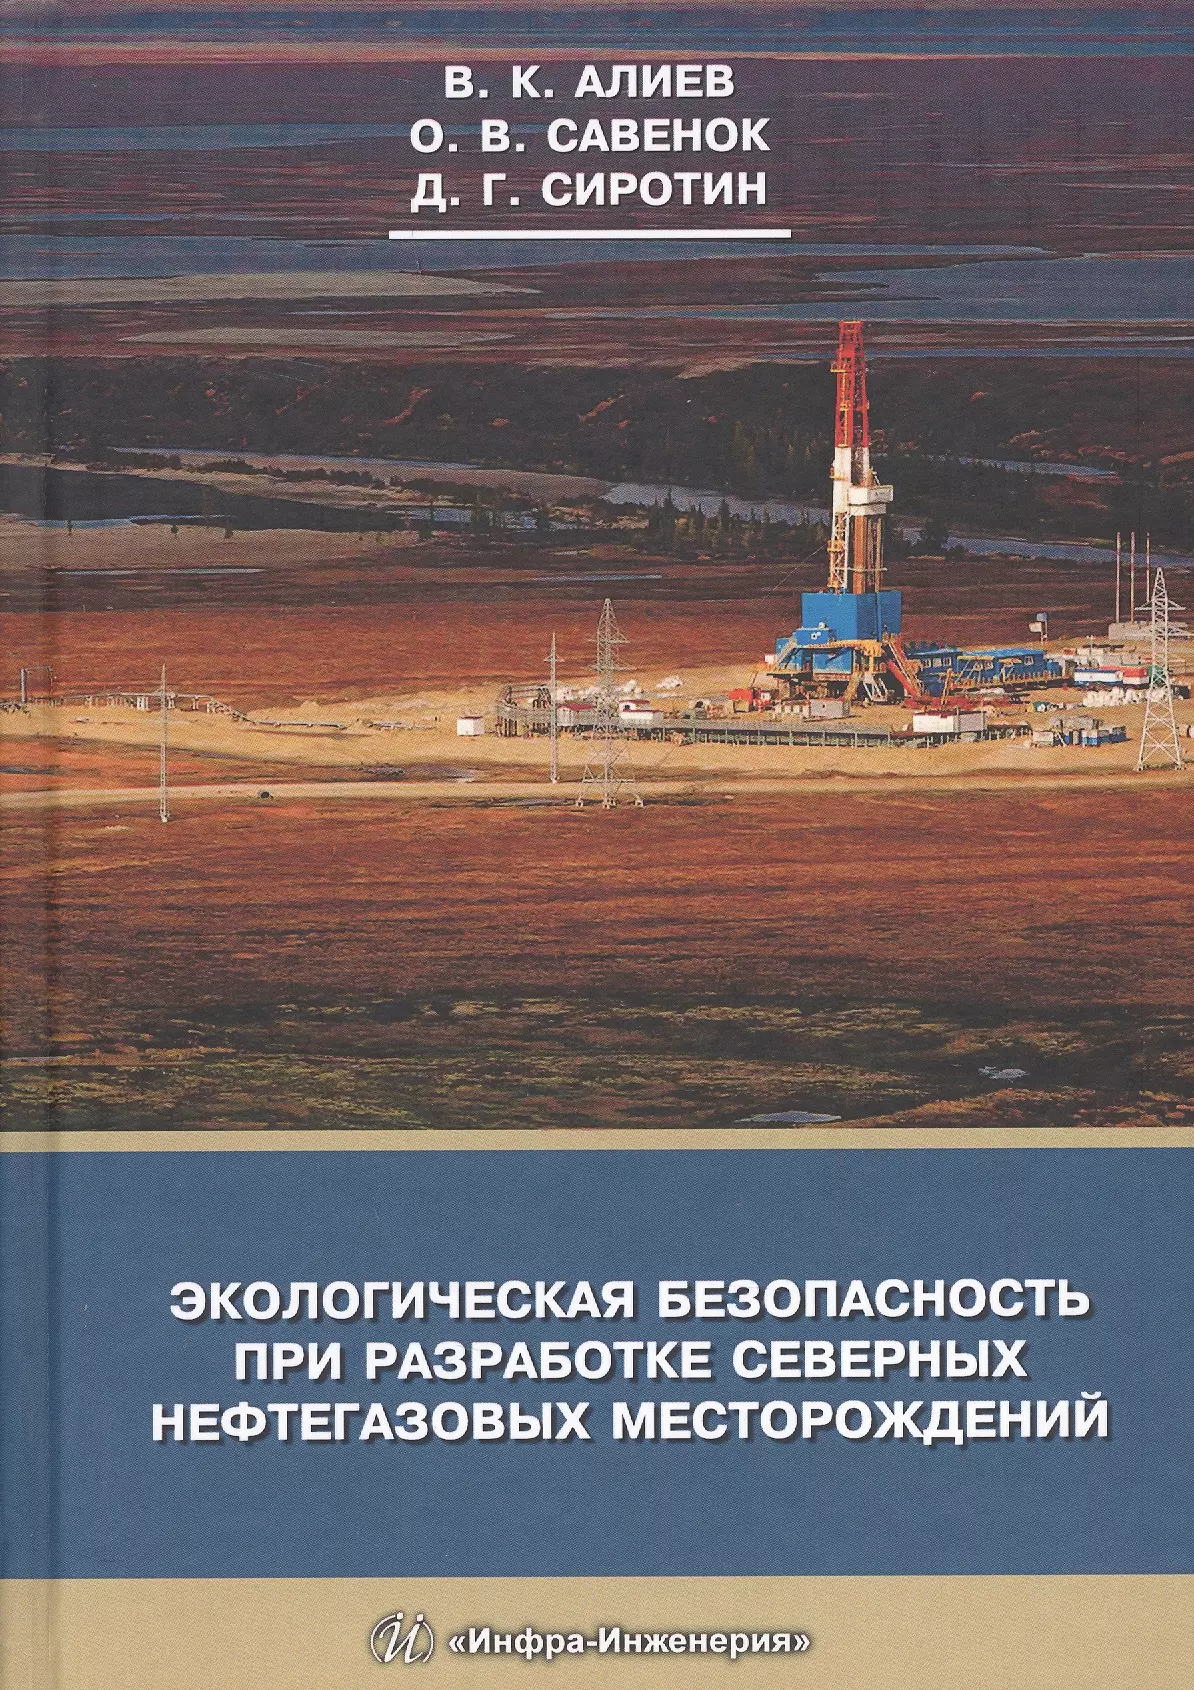 правила промышленной безопасности при разработке нефтяных месторождений шахтным способом Экологическая безопасность при разработке северных нефтегазовых месторождений